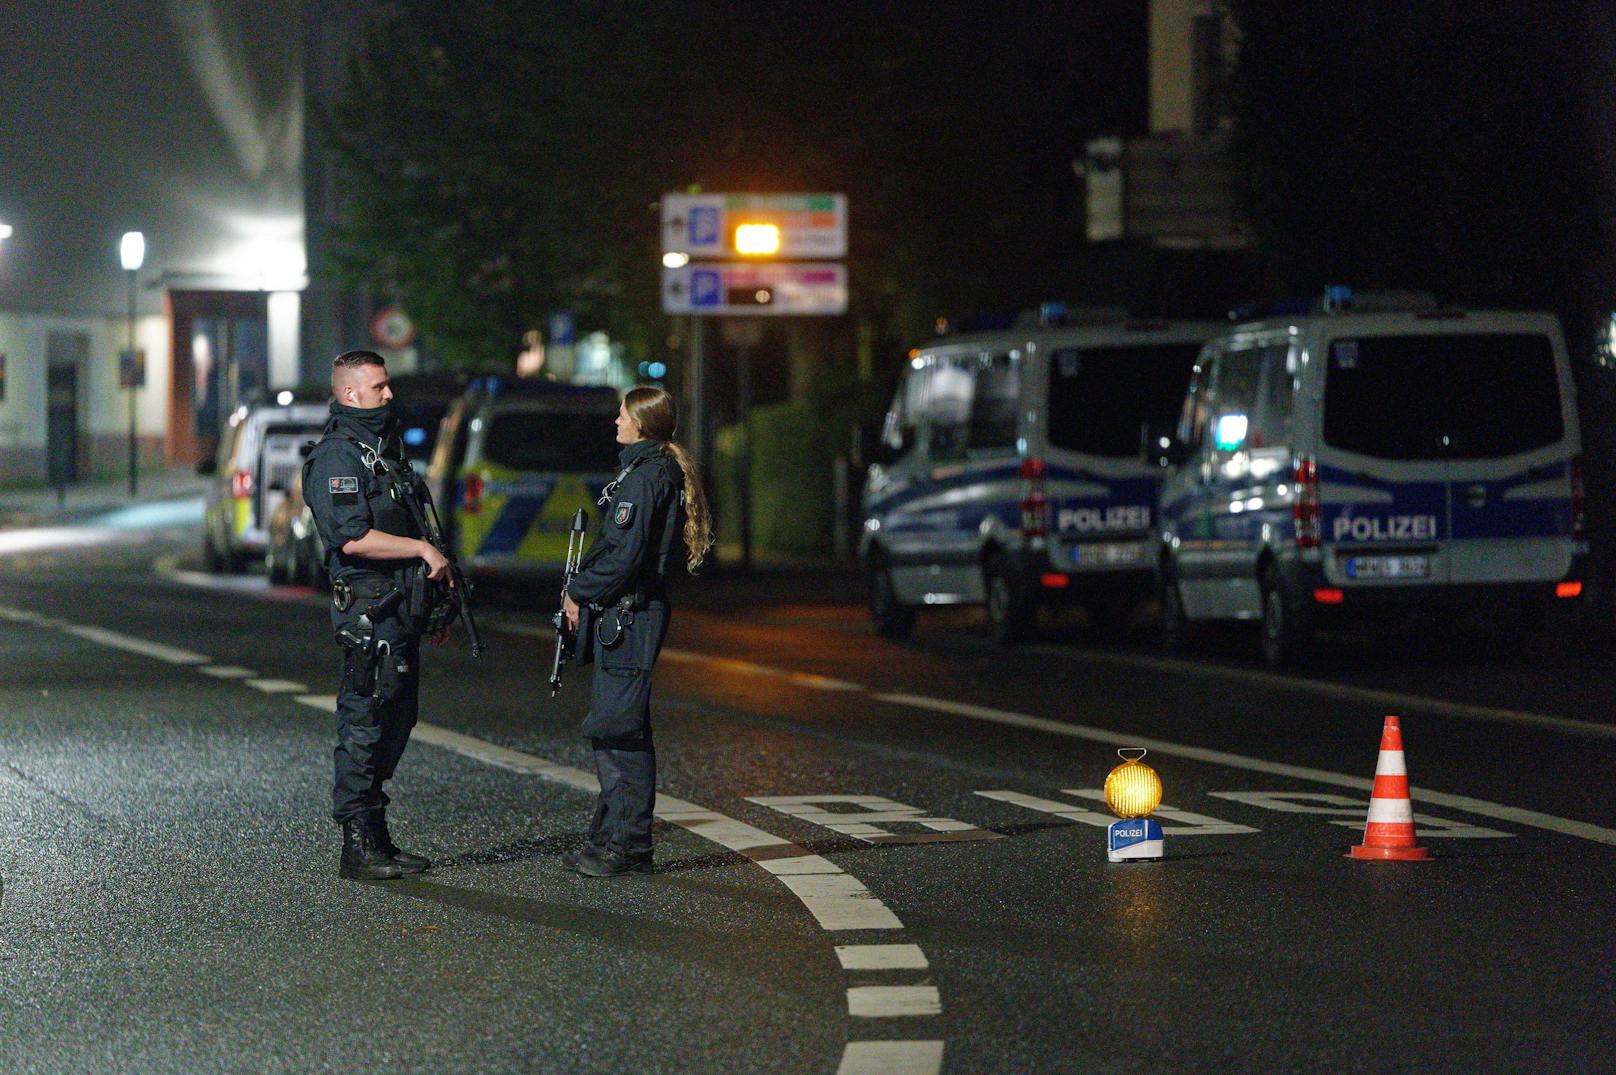 Polizisten vereitelten Terroranschlag vor Synagoge